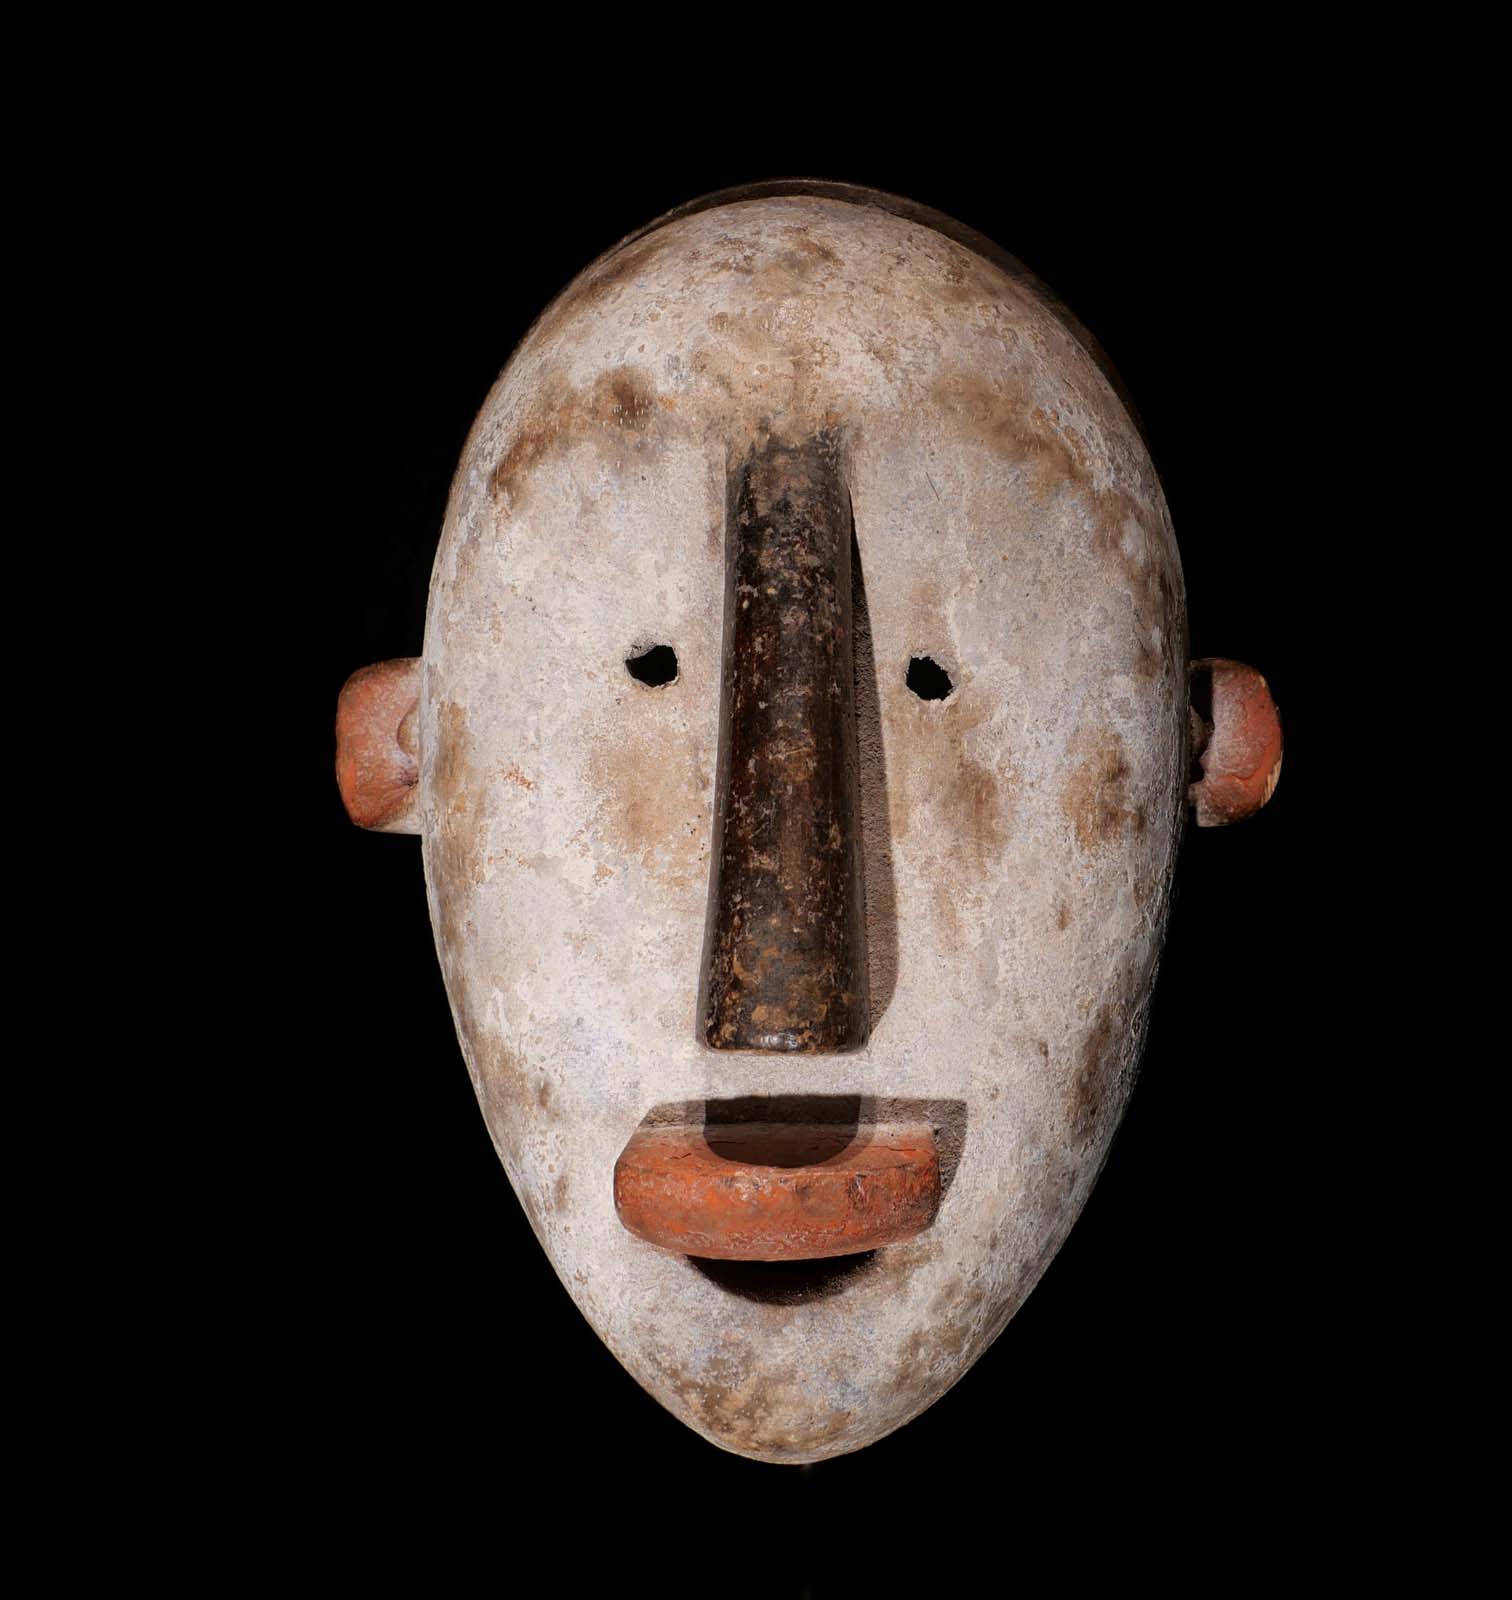 Gesichtsmaske. Holz, Kaolin, Pigmentfarben. Ibibio / Nigeria. H 25 cm, 1500.- €. Priv.Slg. Süd-D-Land.